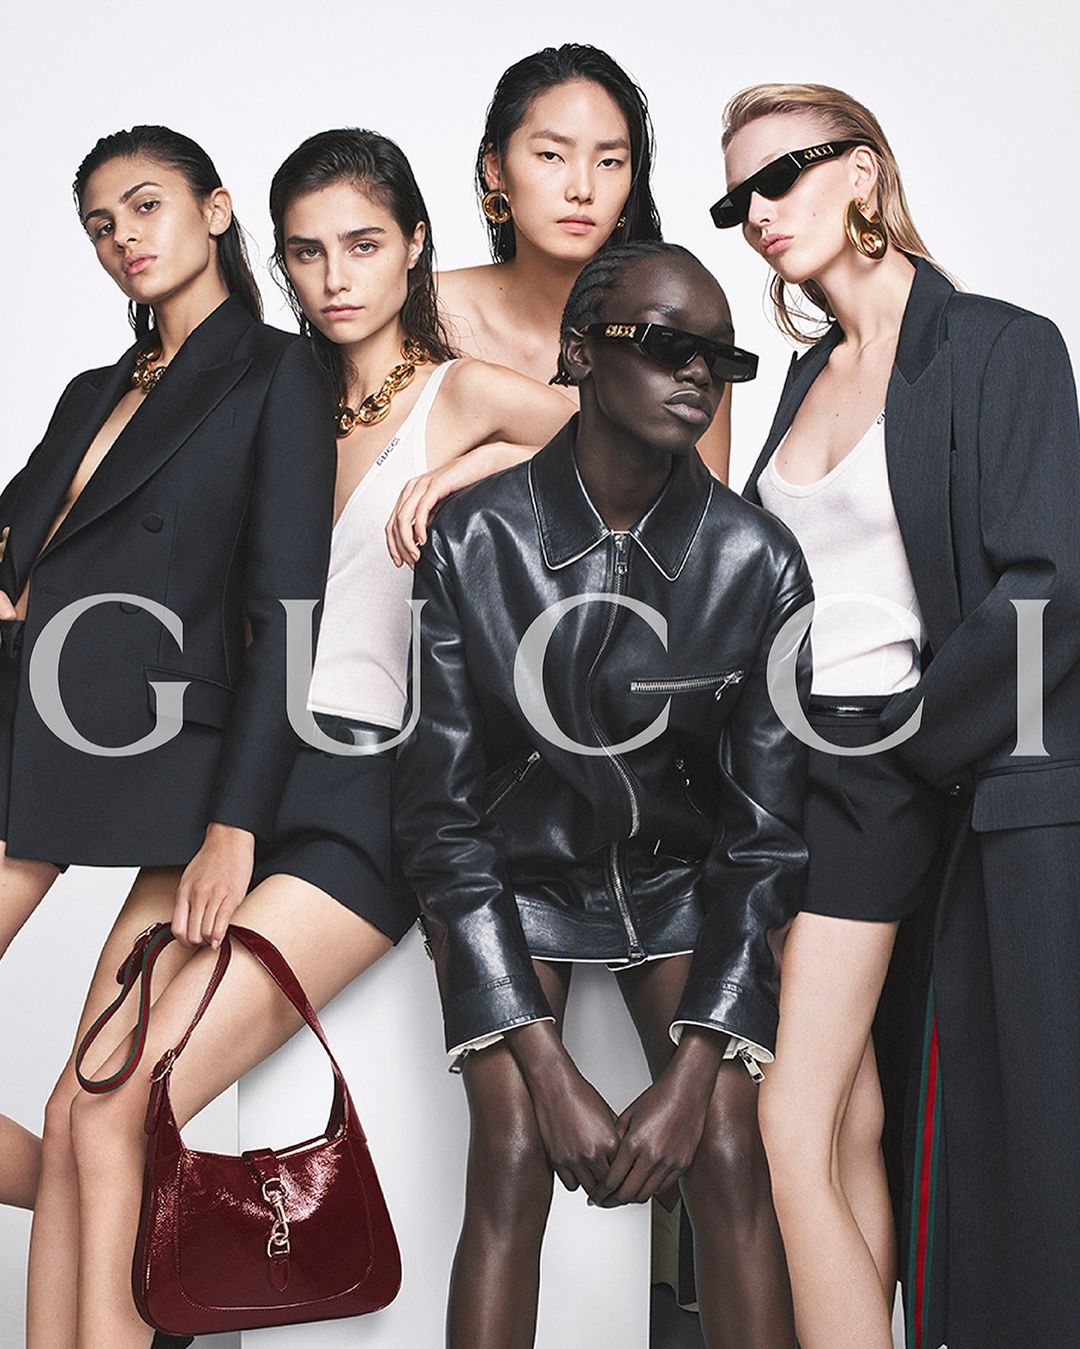  Ο Sabato De Sarno δημιουργεί τη νέα καμπάνια για τον Gucci χρησιμοποιώντας 5 νέα πρόσωπα